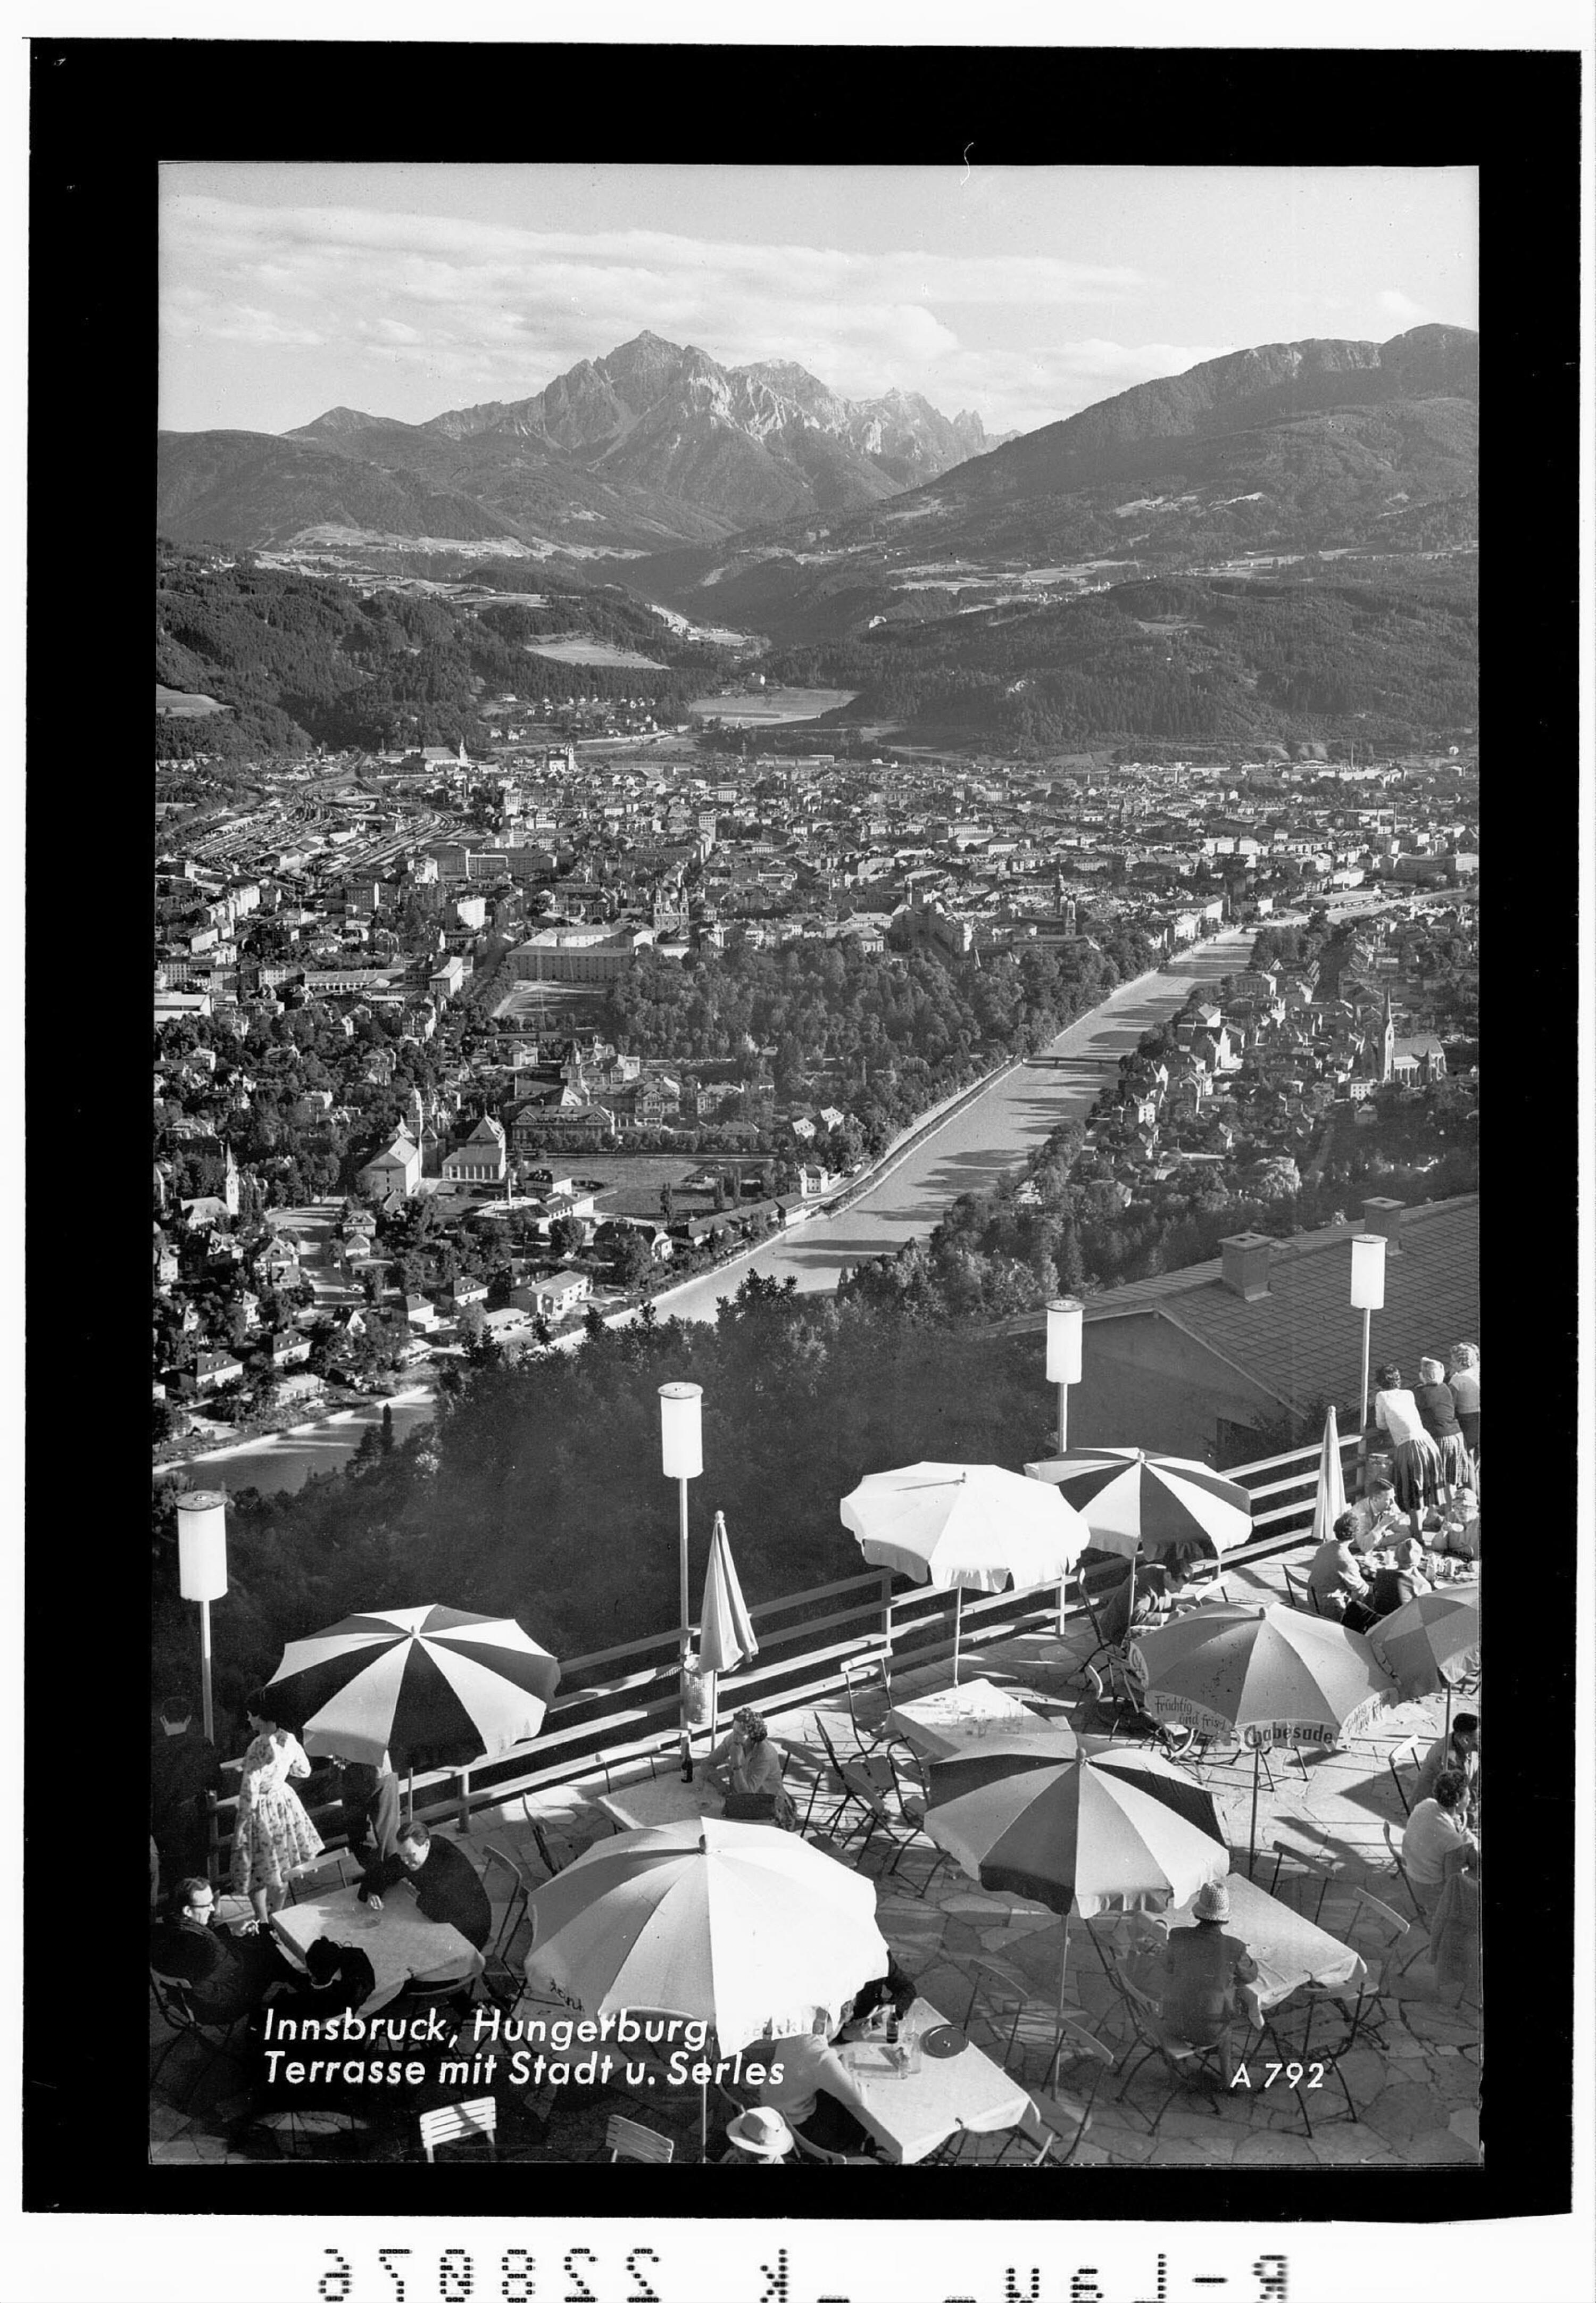 Innsbruck / Hungerburg - Terrasse mit Stadt und Serles></div>


    <hr>
    <div class=